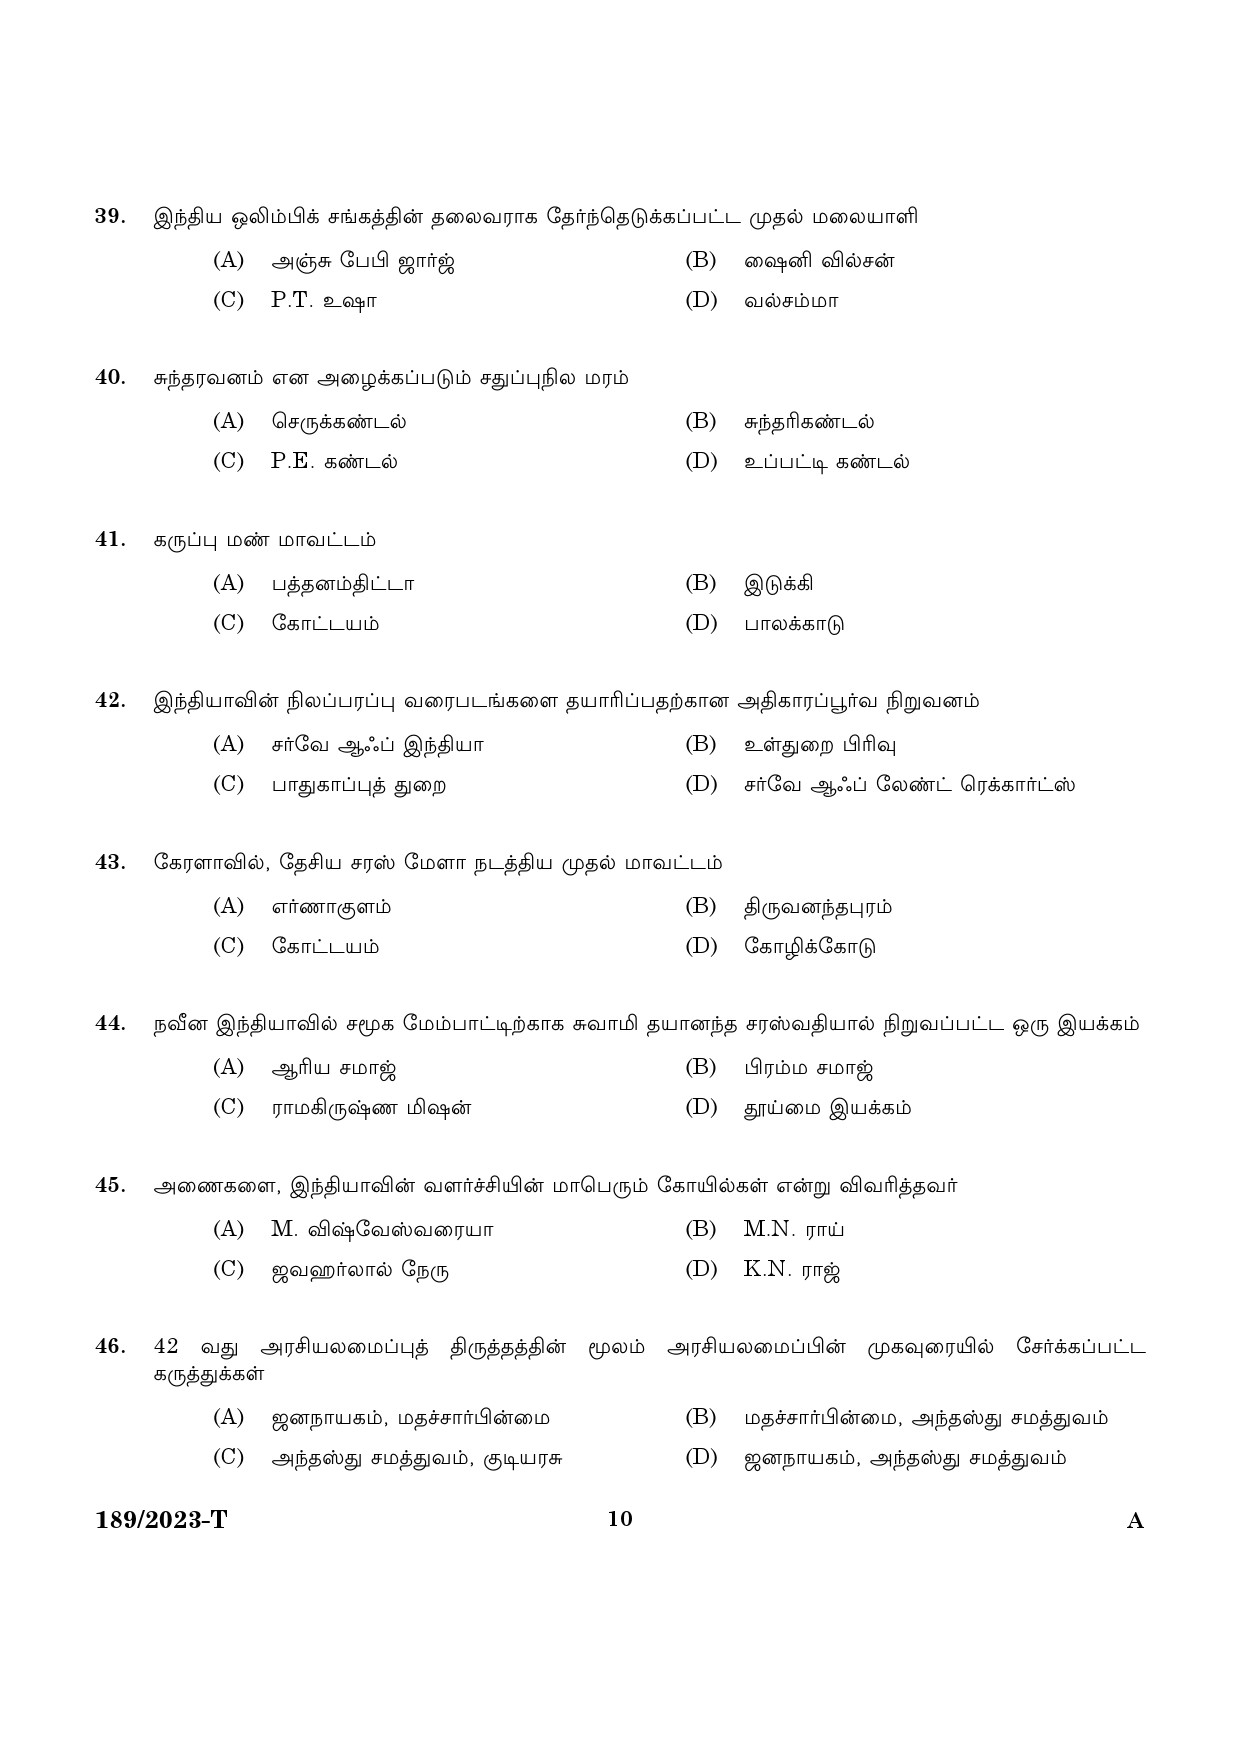 KPSC LGS Tamil Exam 2023 Code 1892023 T 8